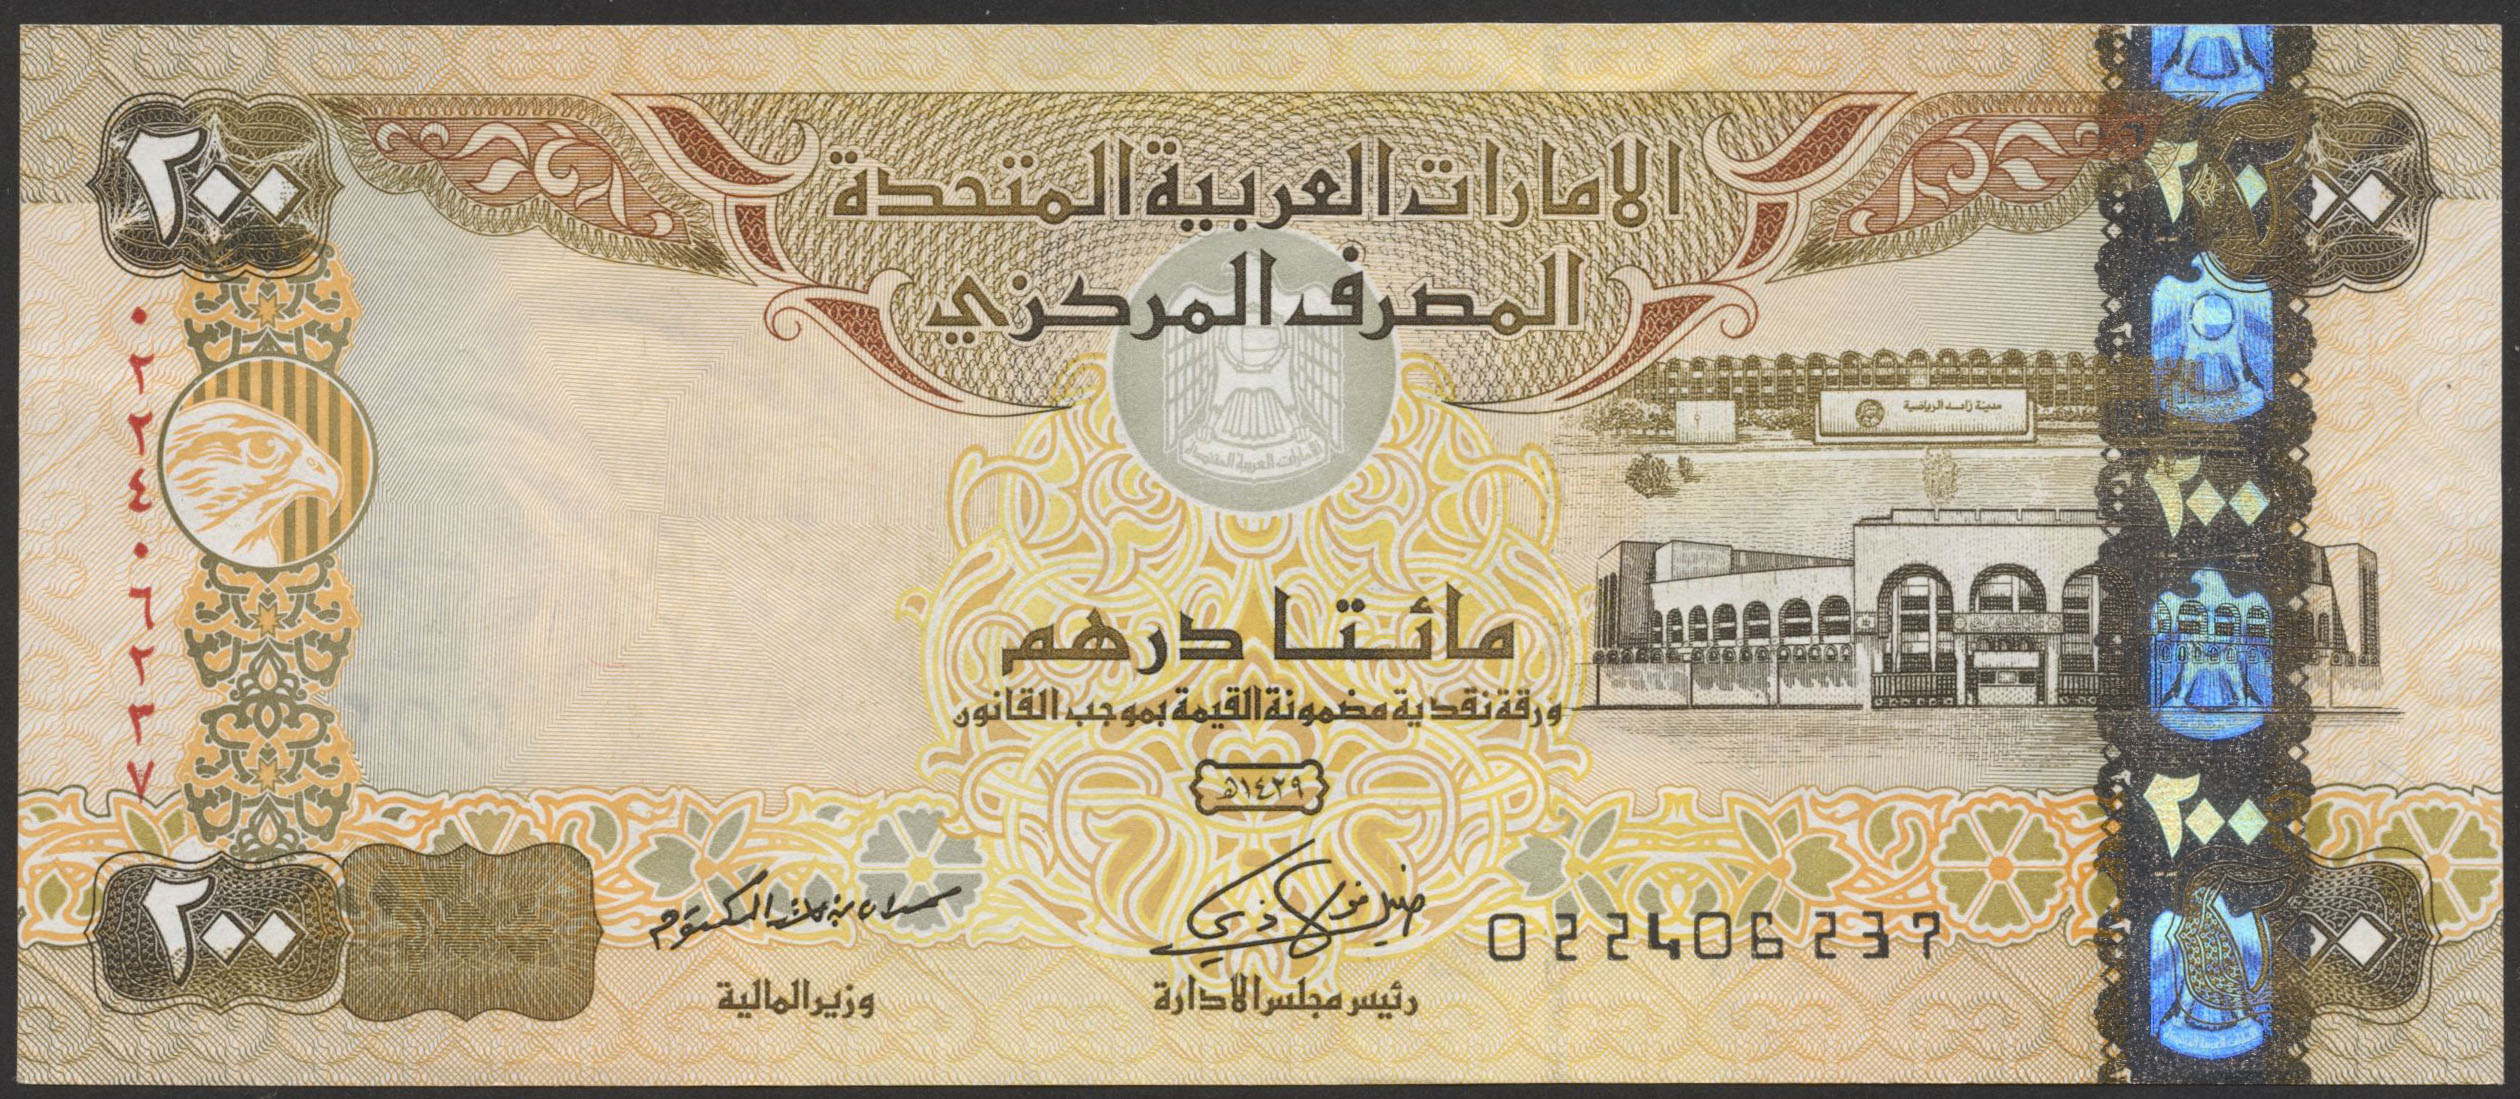 Дирхам в какой стране. Банкнота арабские эмираты 200 дирхам. Купюры дирхамы ОАЭ. Банкнота 5 дирхамов ОАЭ. Банкноты United arab Emirates,2008, 50 dirhams.